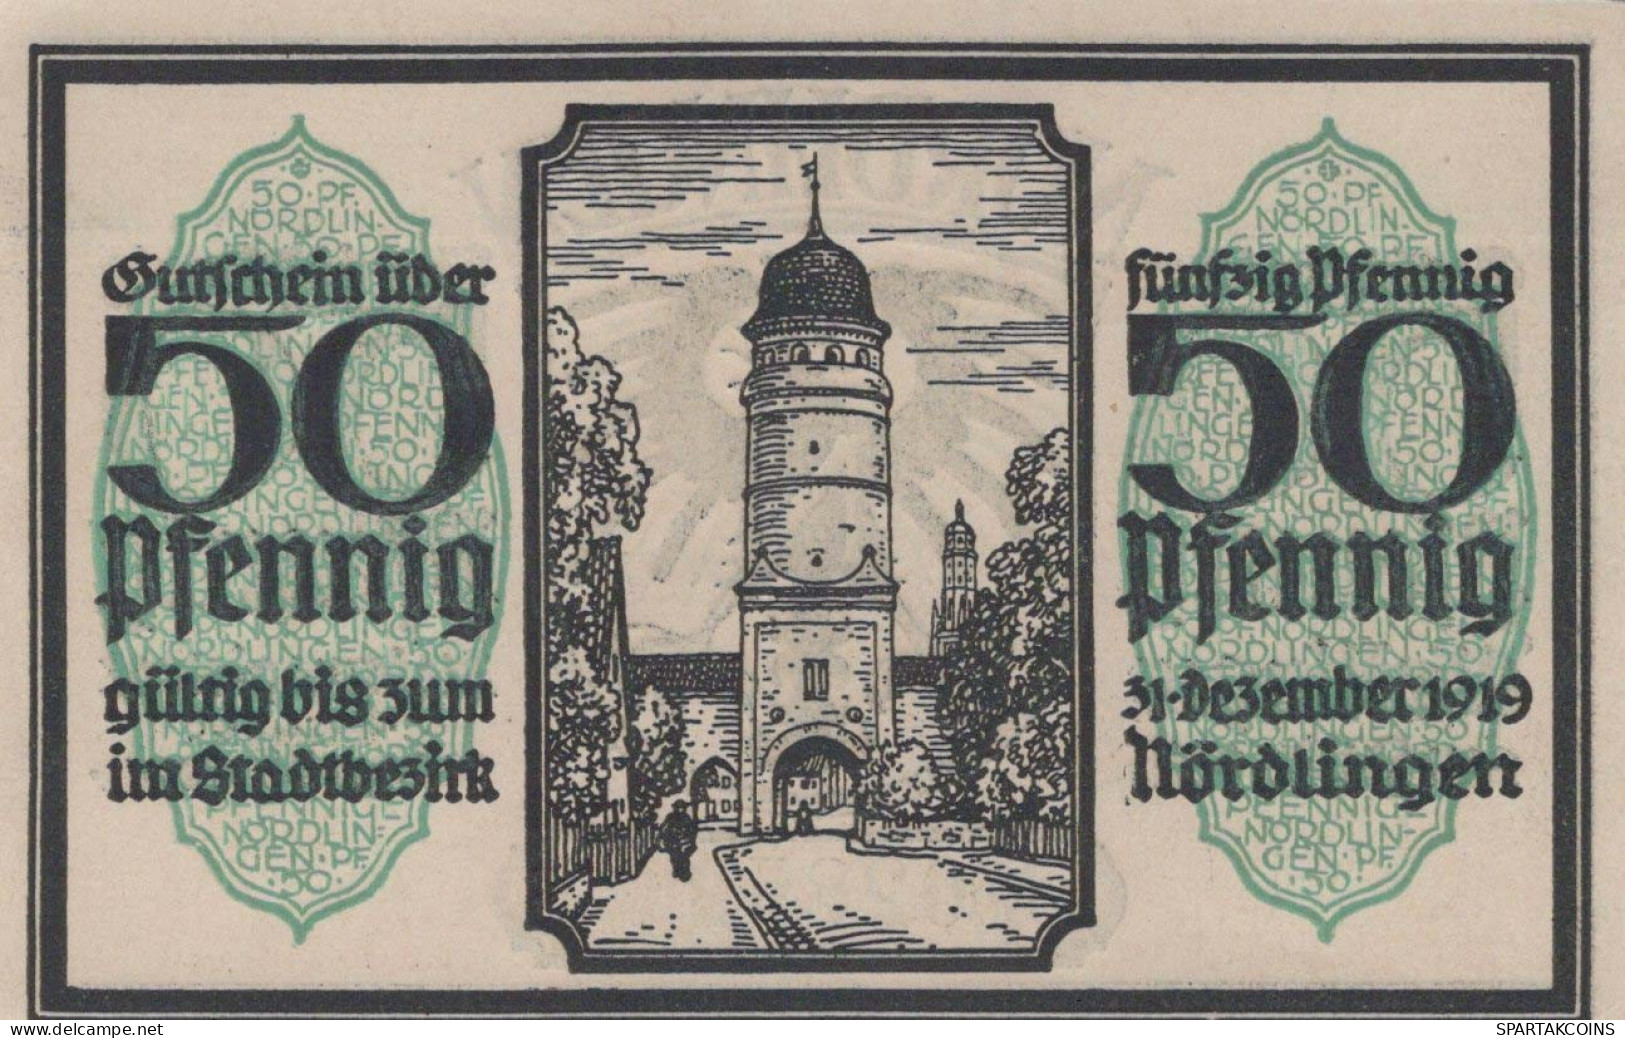 50 PFENNIG 1918 Stadt NoRDLINGEN Bavaria UNC DEUTSCHLAND Notgeld Banknote #PH267 - [11] Local Banknote Issues